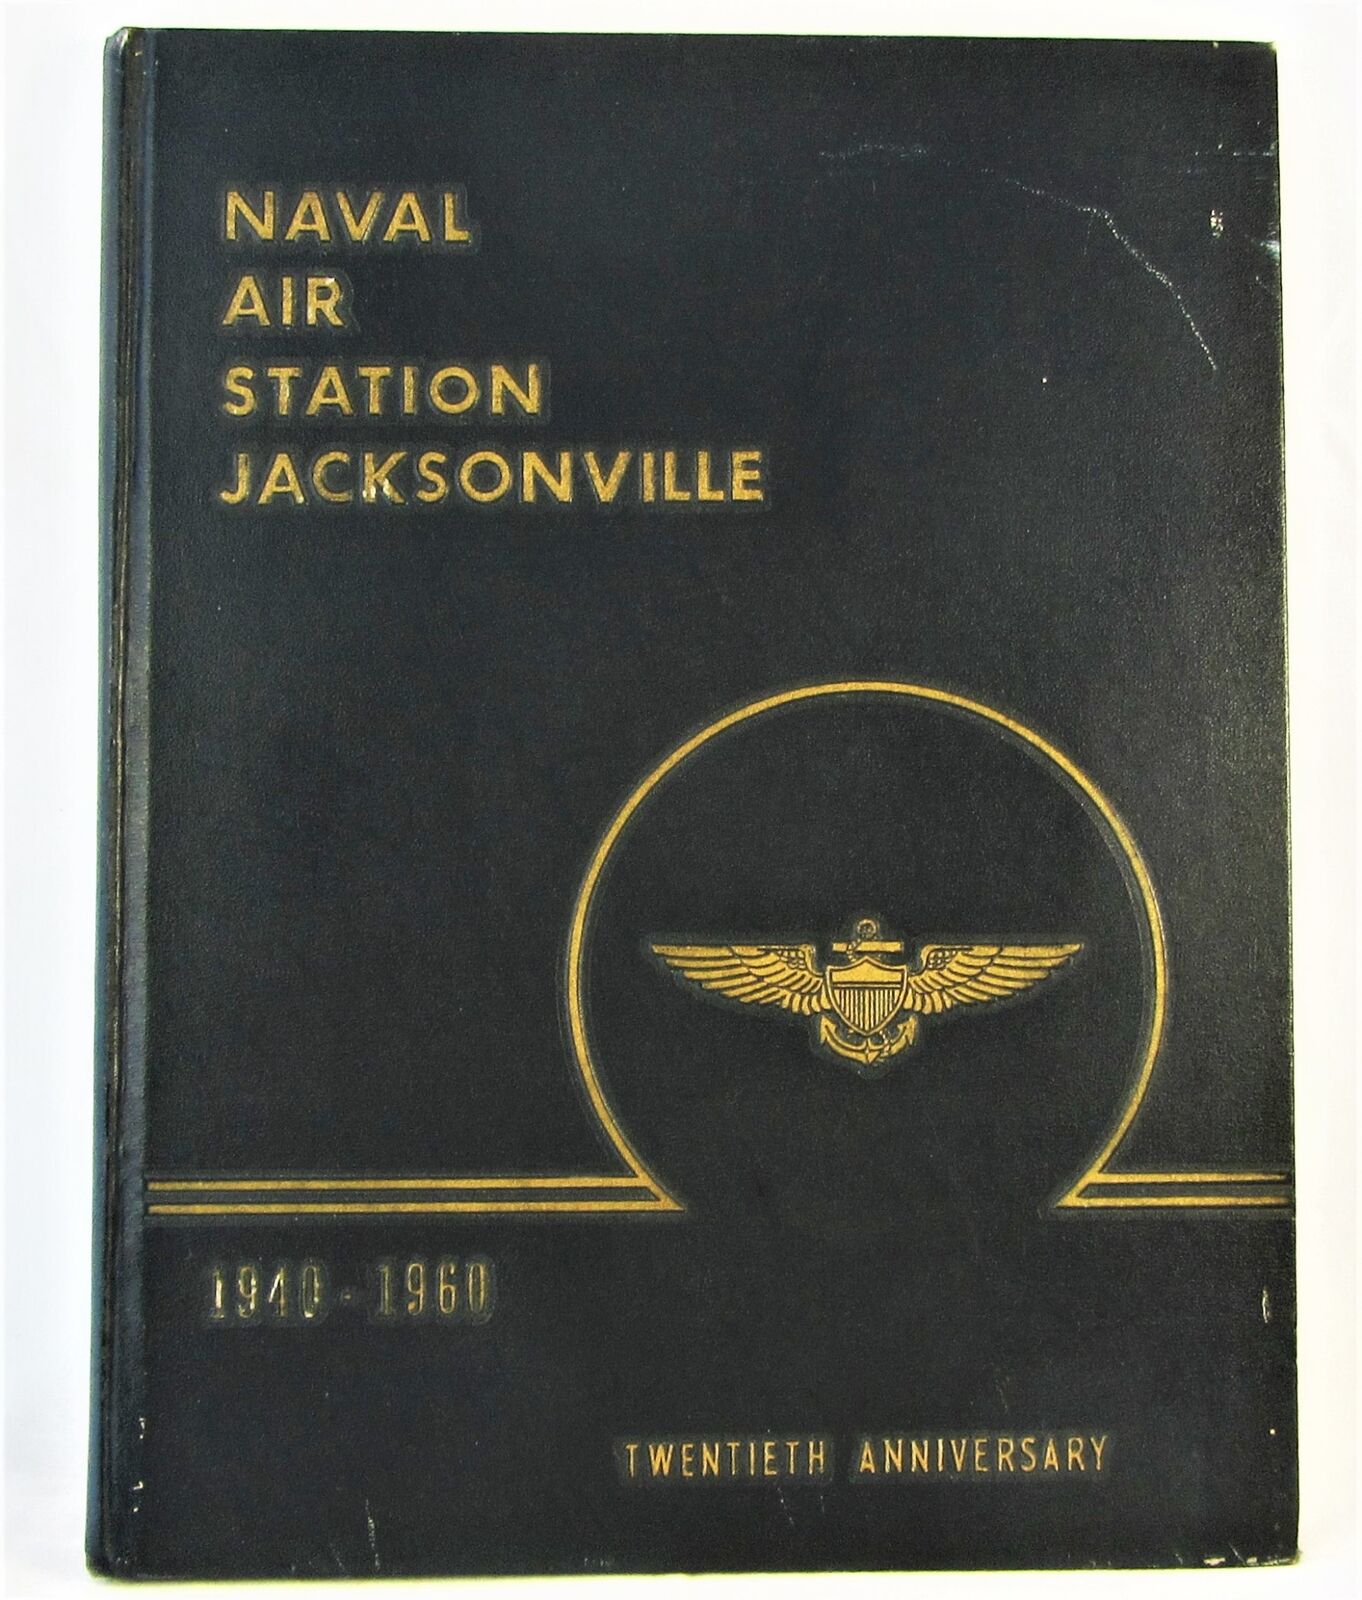 Naval Air Station Jacksonville Twentieth Anniversary 1940-1960 US Navy Book FS